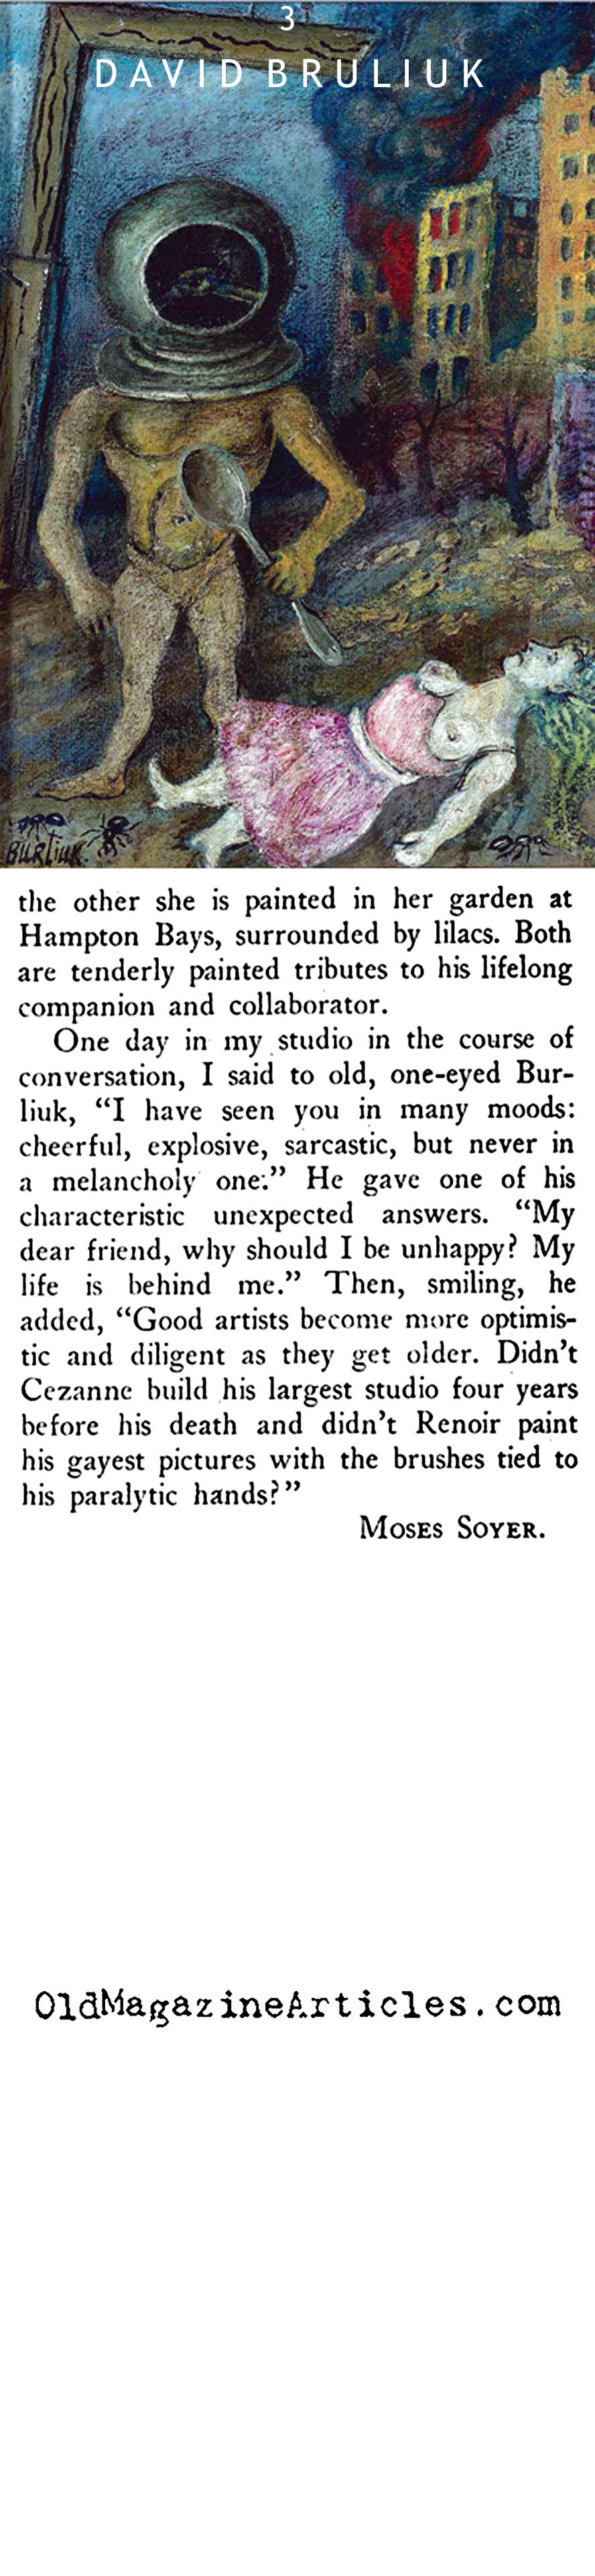 Moses Soyer on David Bruliuk (New Masses, 1944)